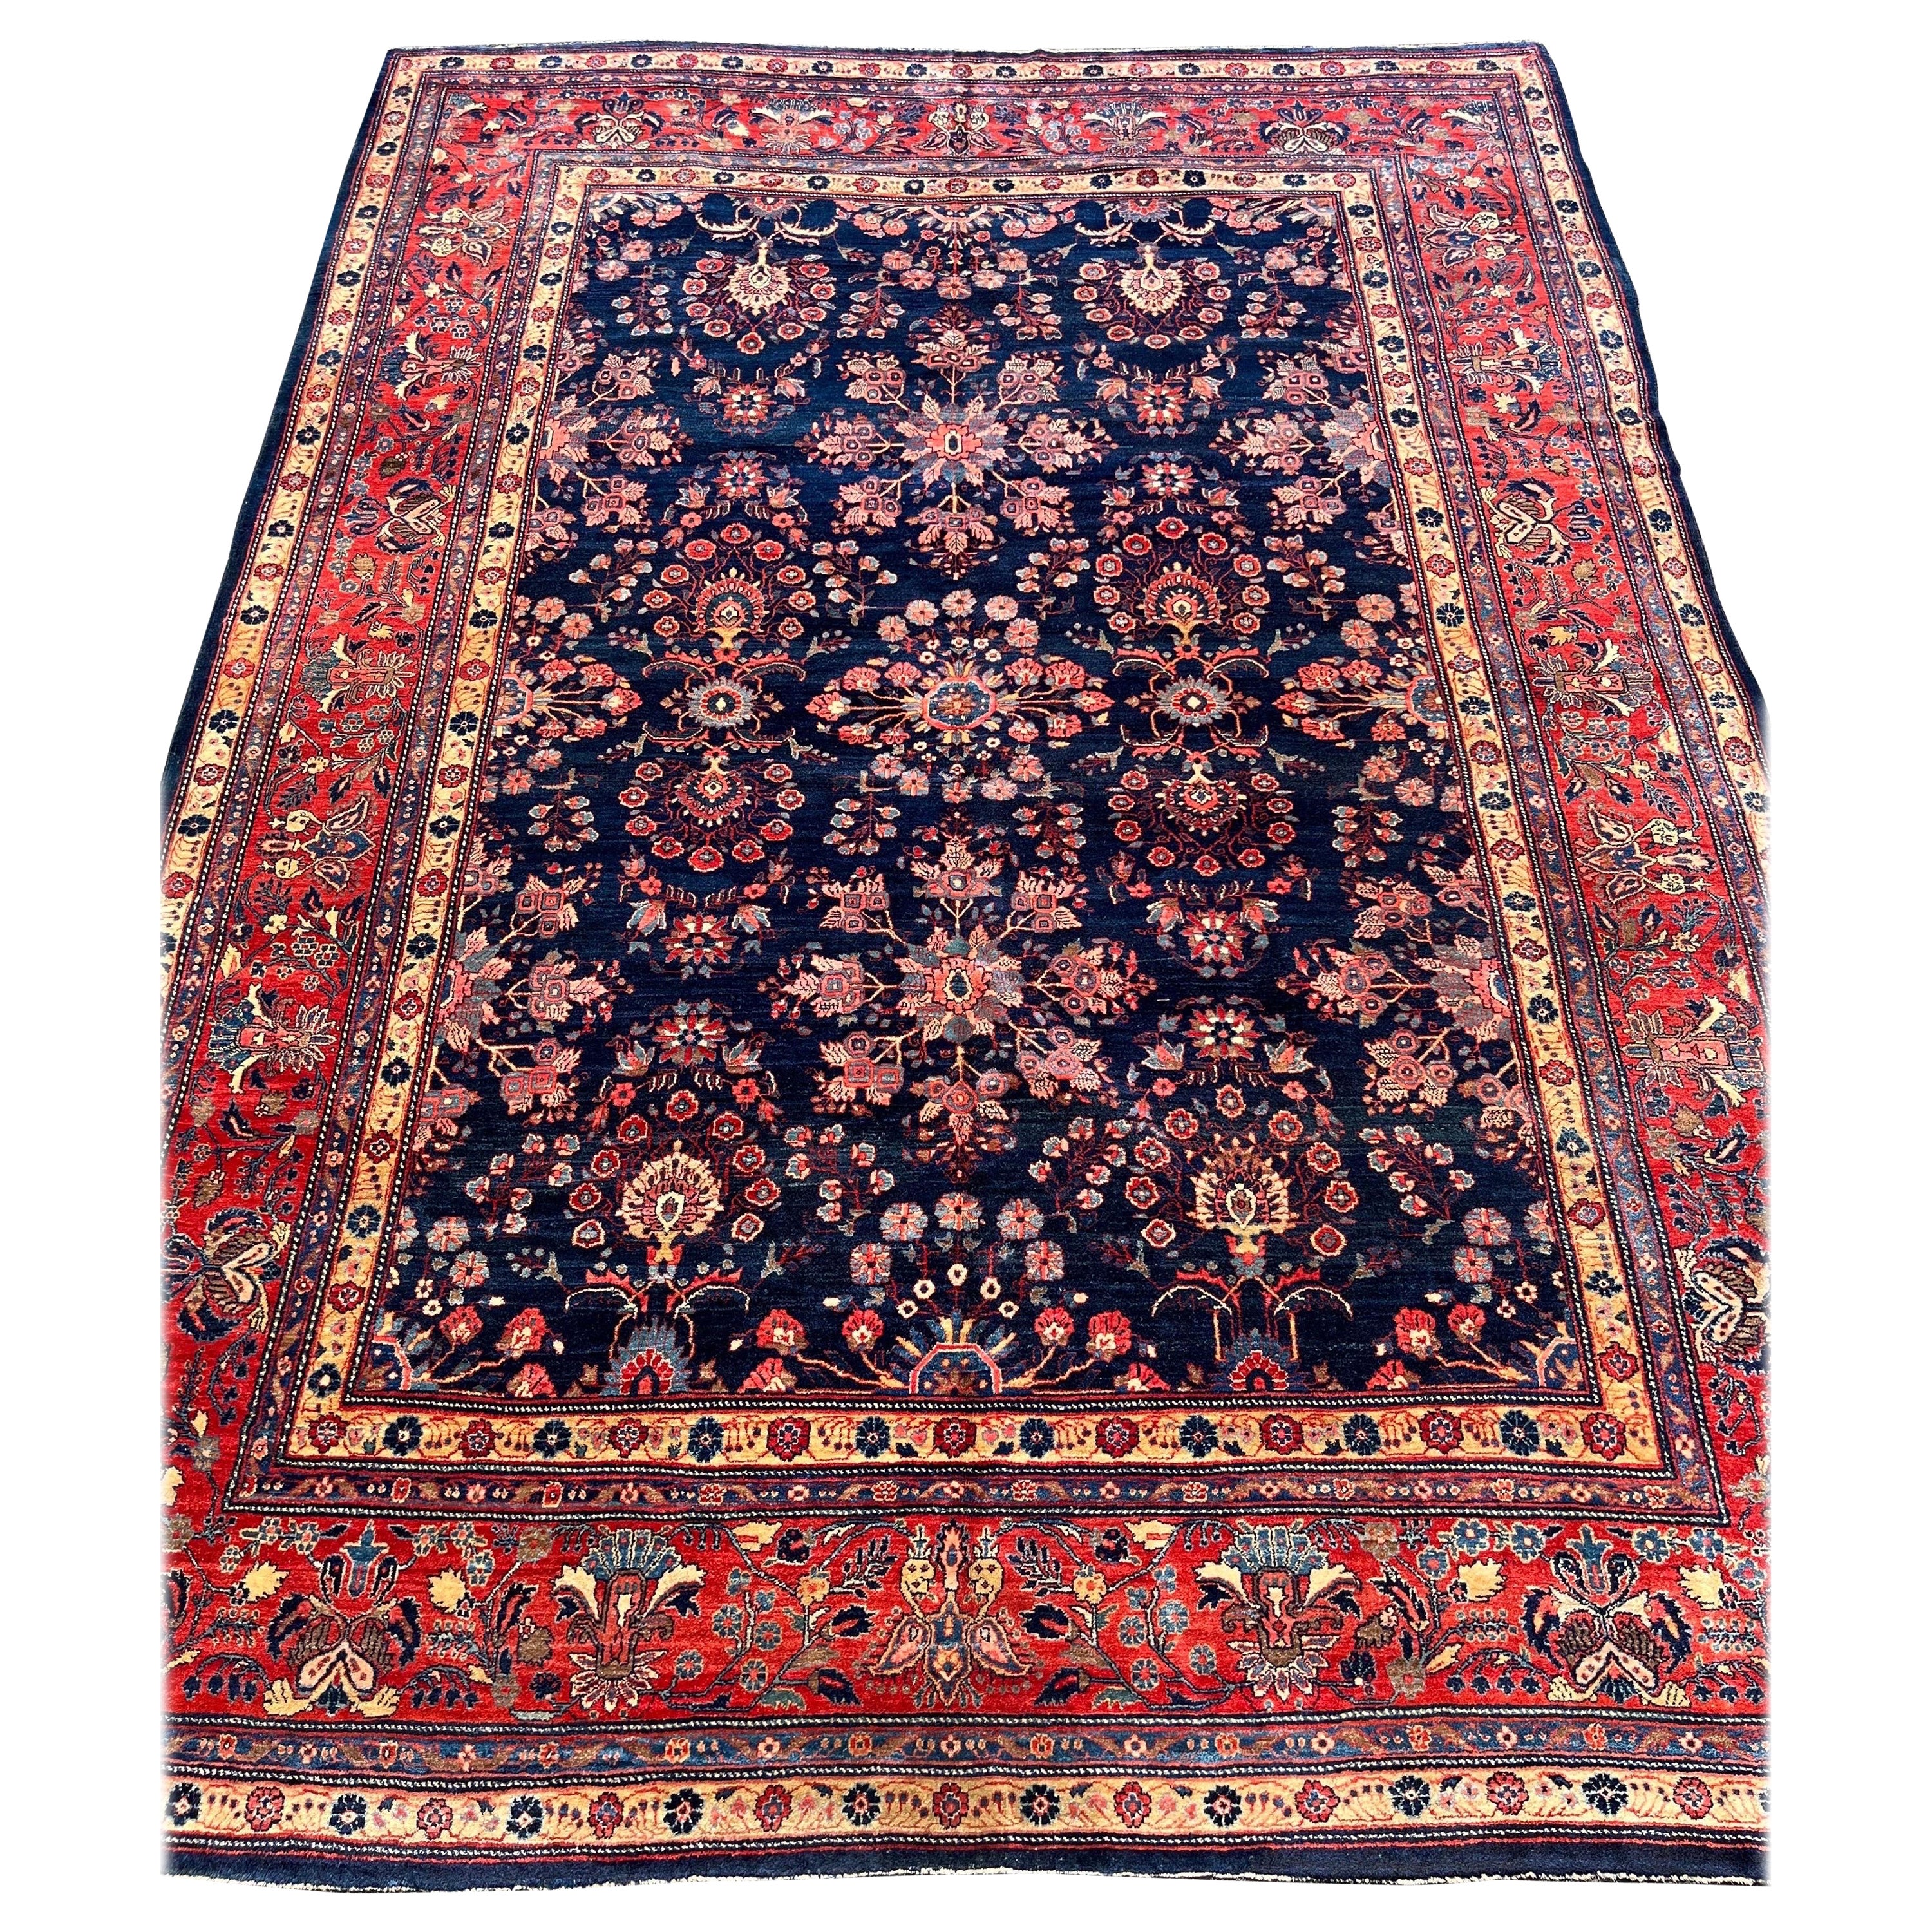 9’1”x12’1” Persian blue Mahajaran Sarouk ca 1910 handmade wool rug For Sale